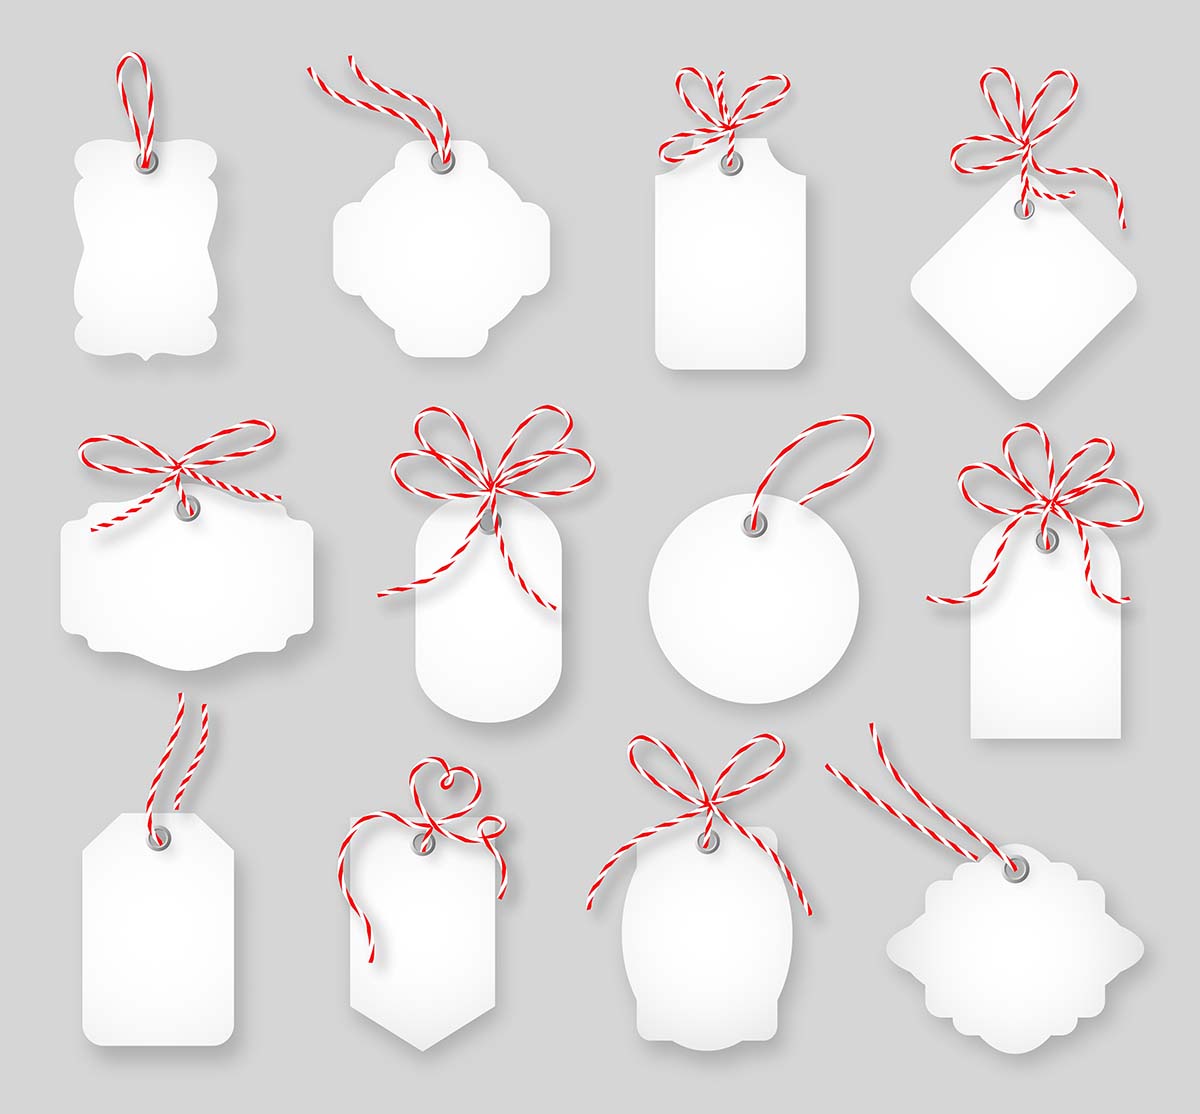 价格标签和礼品卡用麻绳蝴蝶结绑起来。标签纸，销售设计，结，矢量图免费矢量price-tags-gi